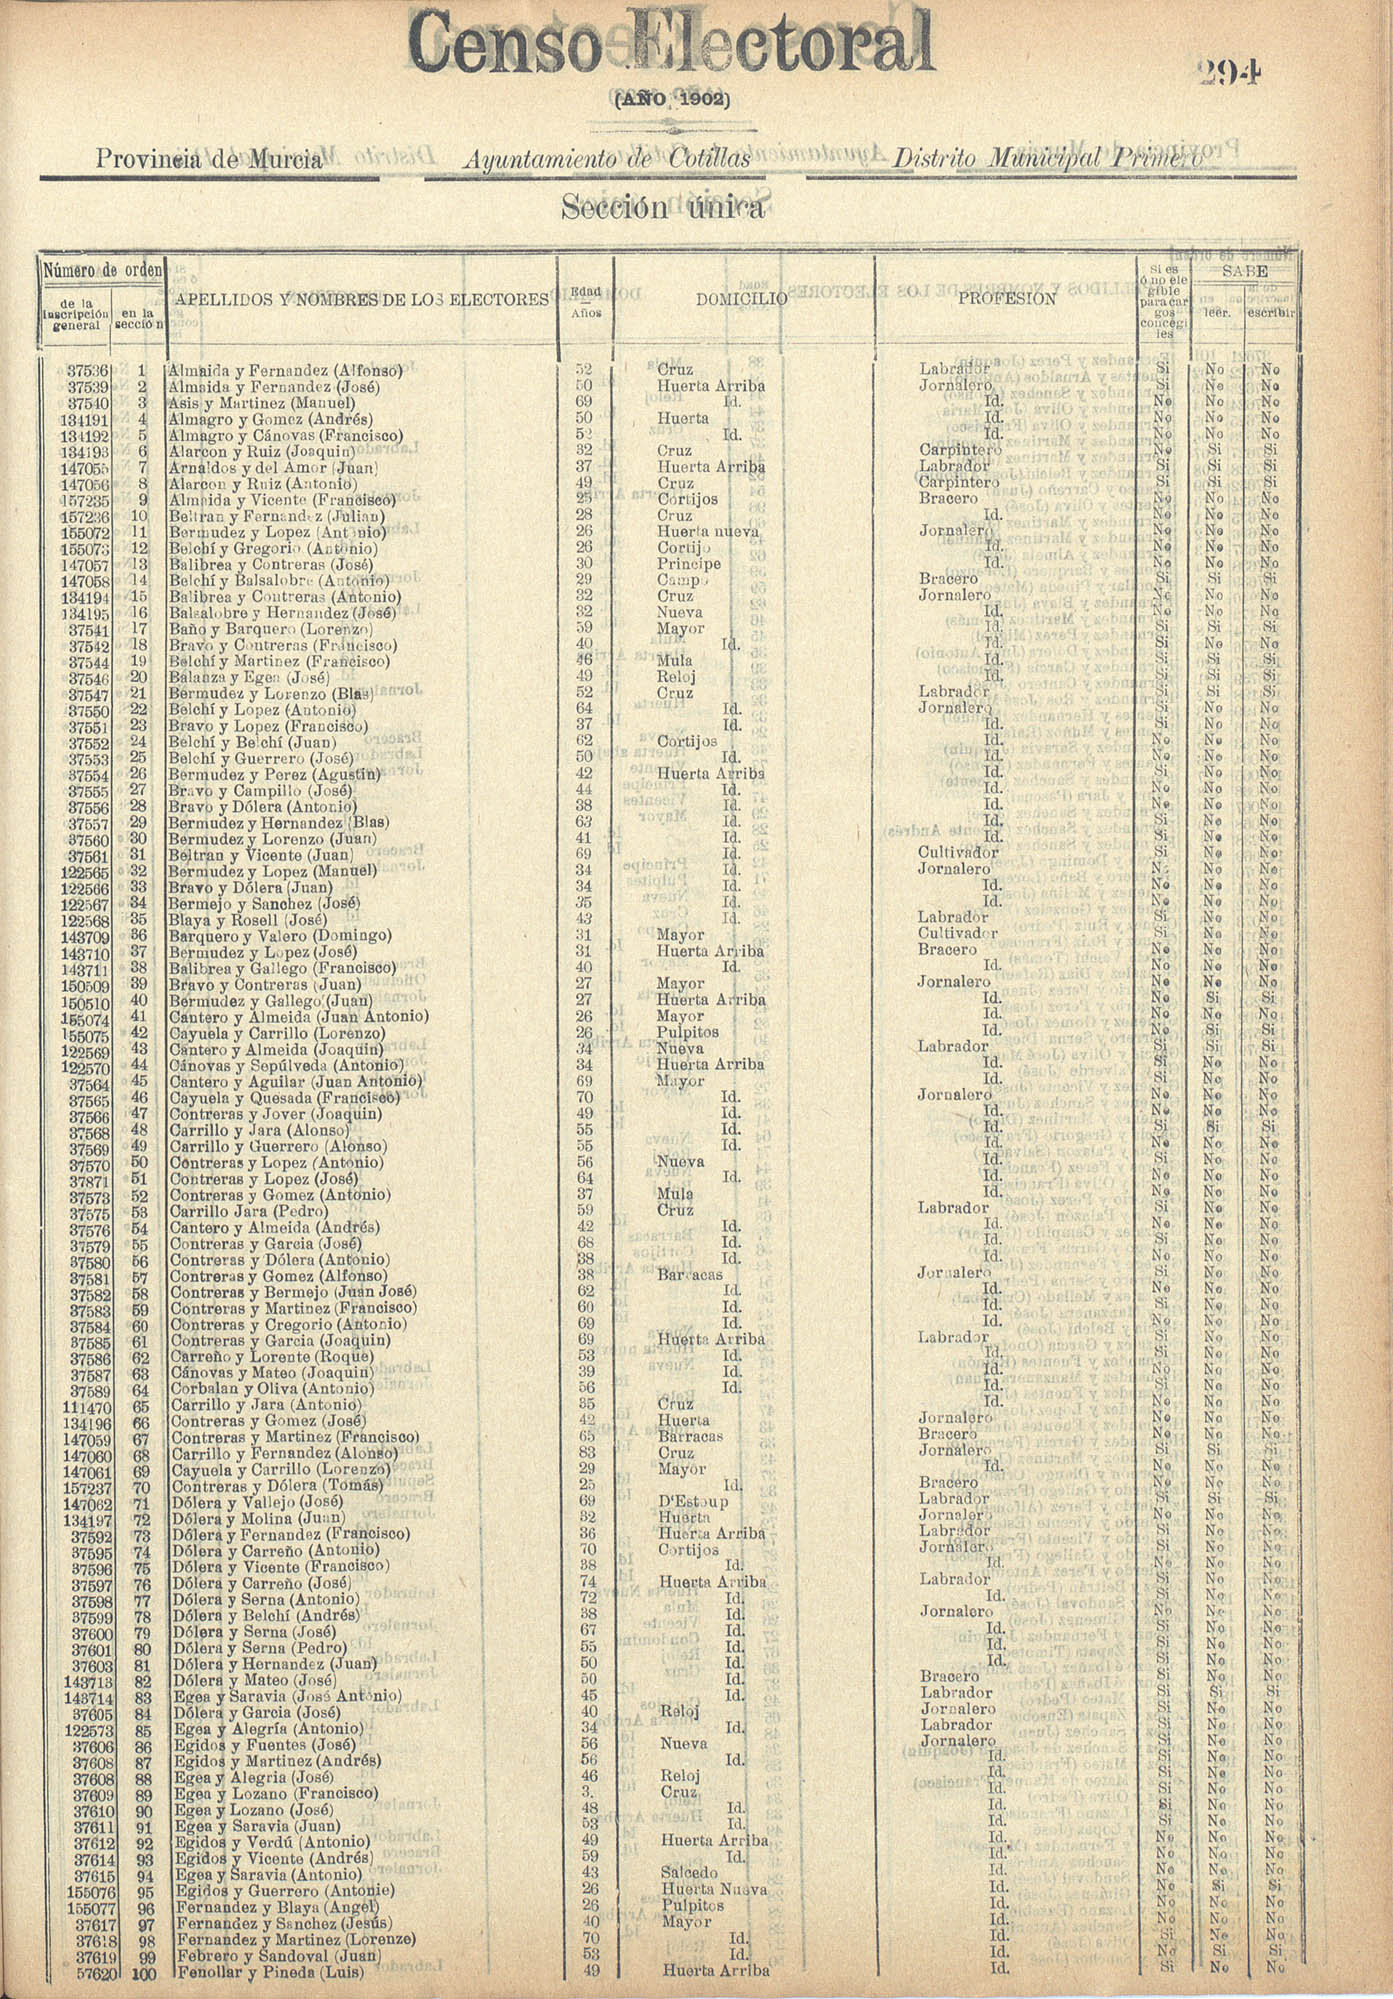 Censo electoral provincial de 1902: Las Torres de Cotillas.